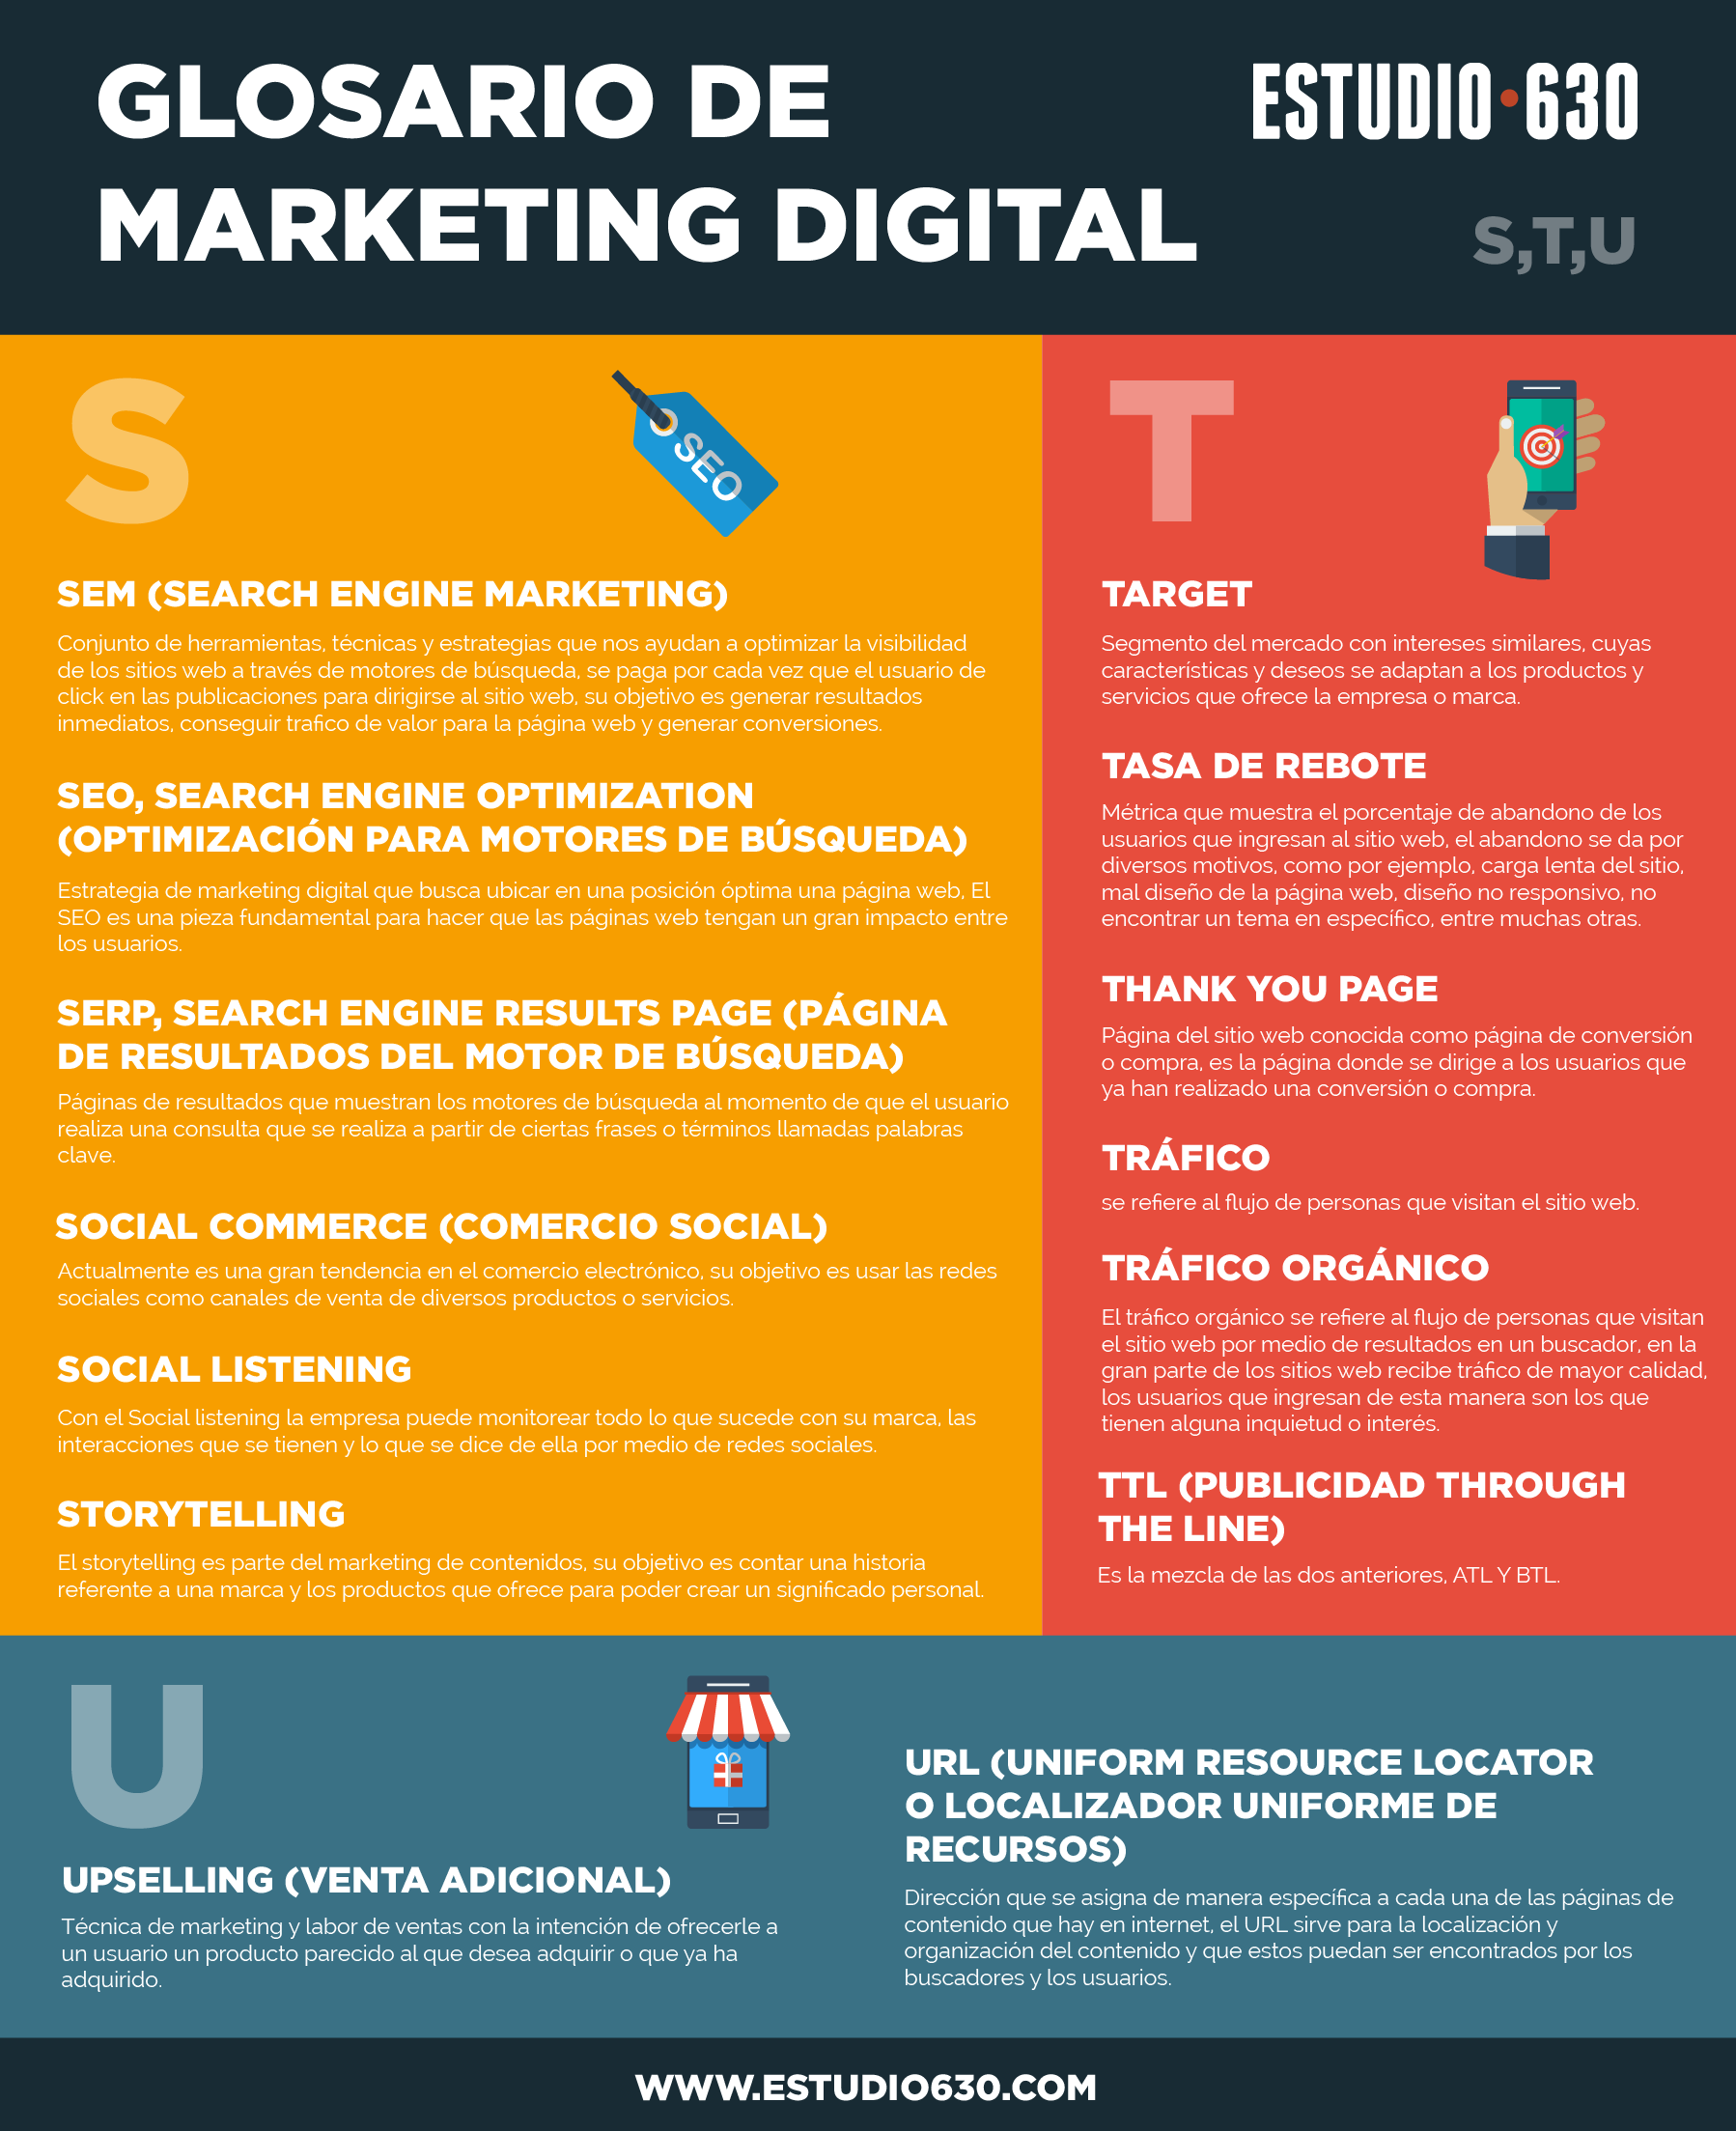 glosario de marketing digital - Glosario de Marketing Digital S U - Glosario de Marketing Digital